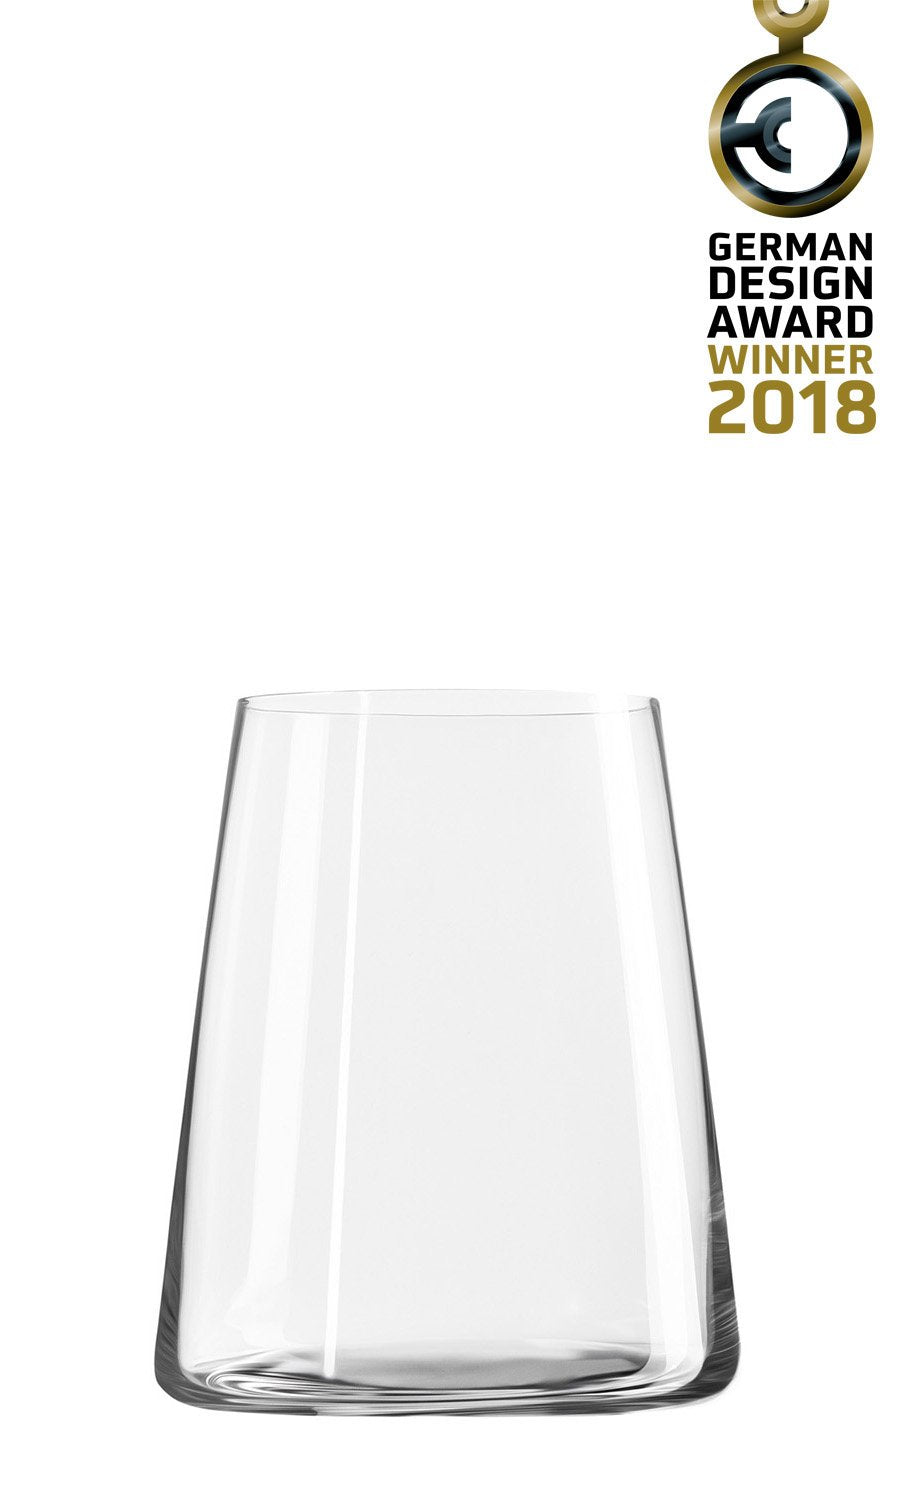 Stoelzle® Power Stemless White Wine Glass (set of 6)